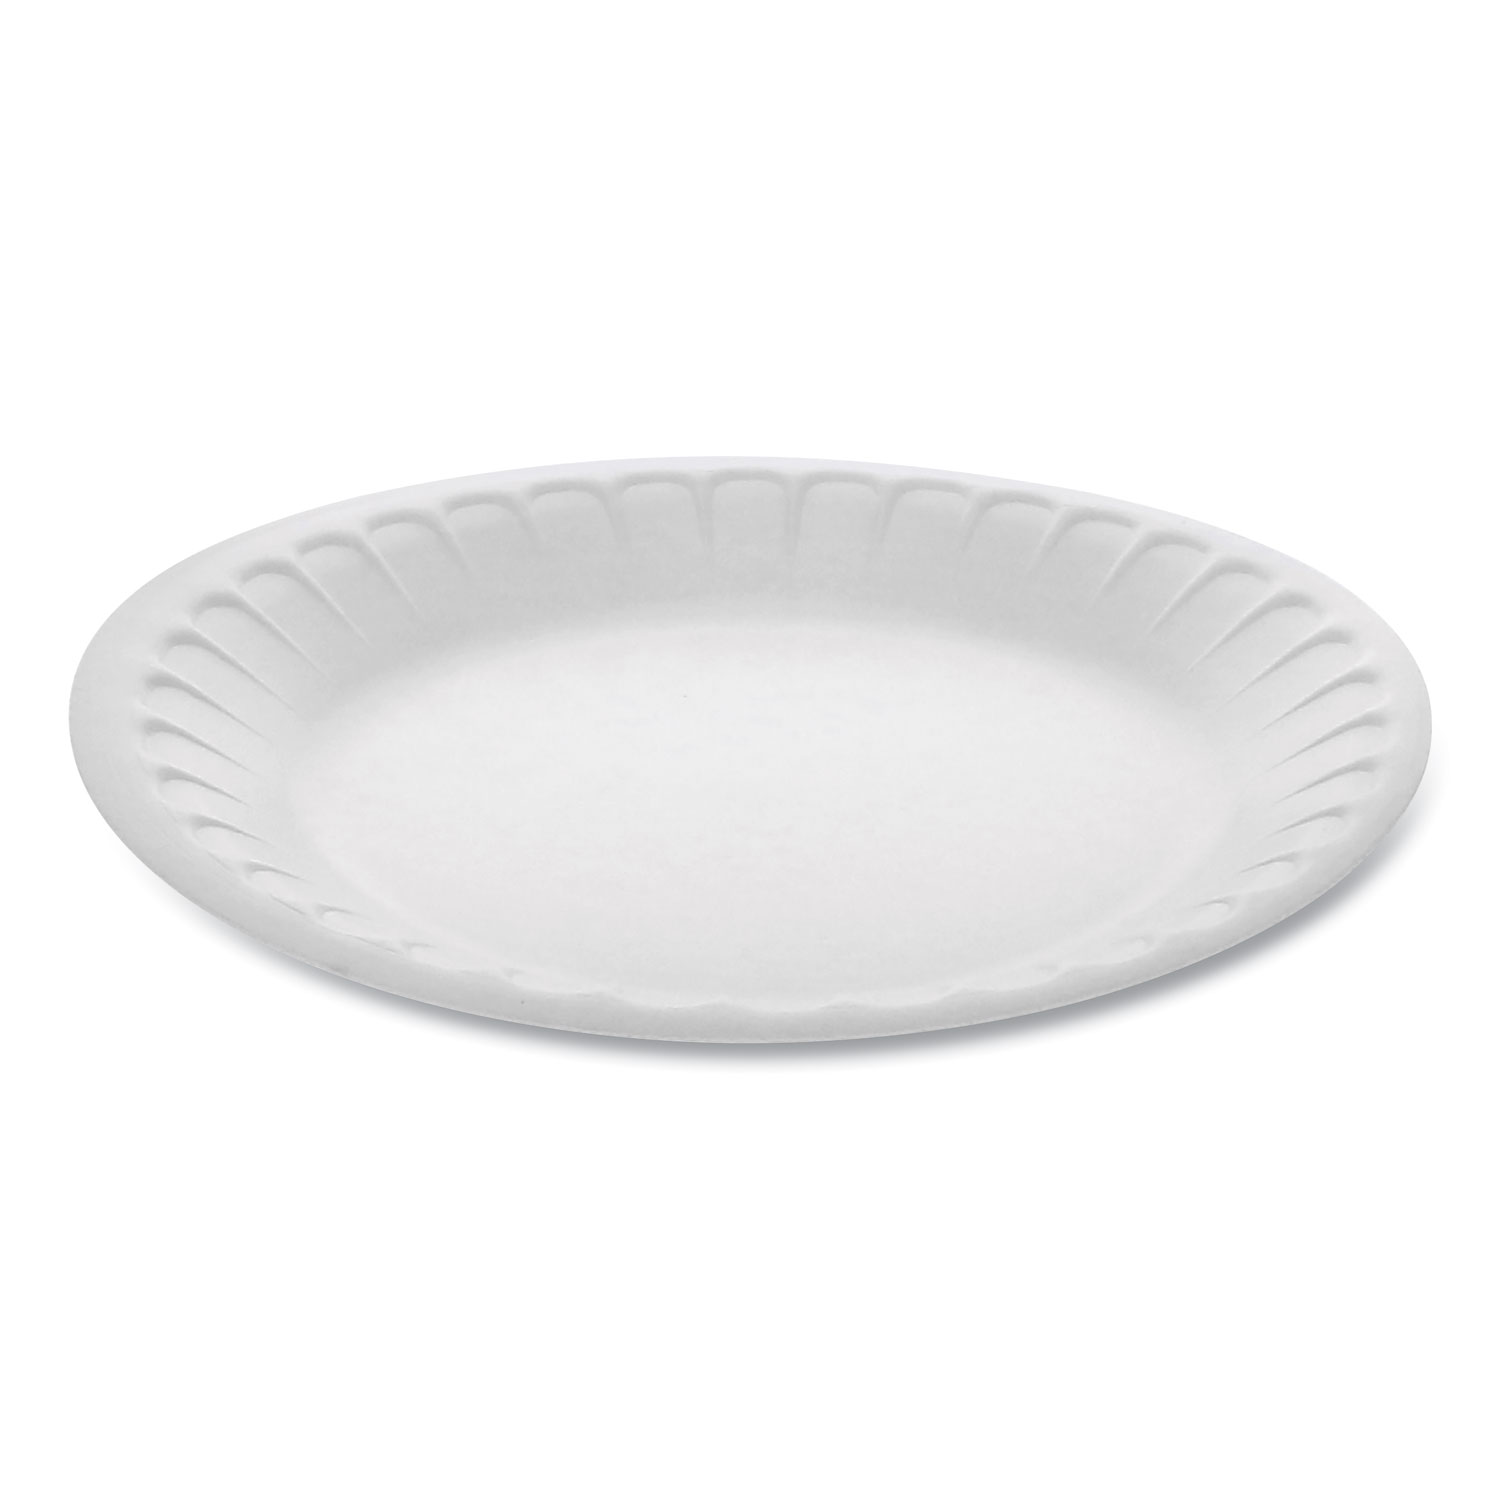  Pactiv YTH100070000 Unlaminated Foam Dinnerware, Plate, 7 Diameter, White, 900/Carton (PCTYTH100070000) 